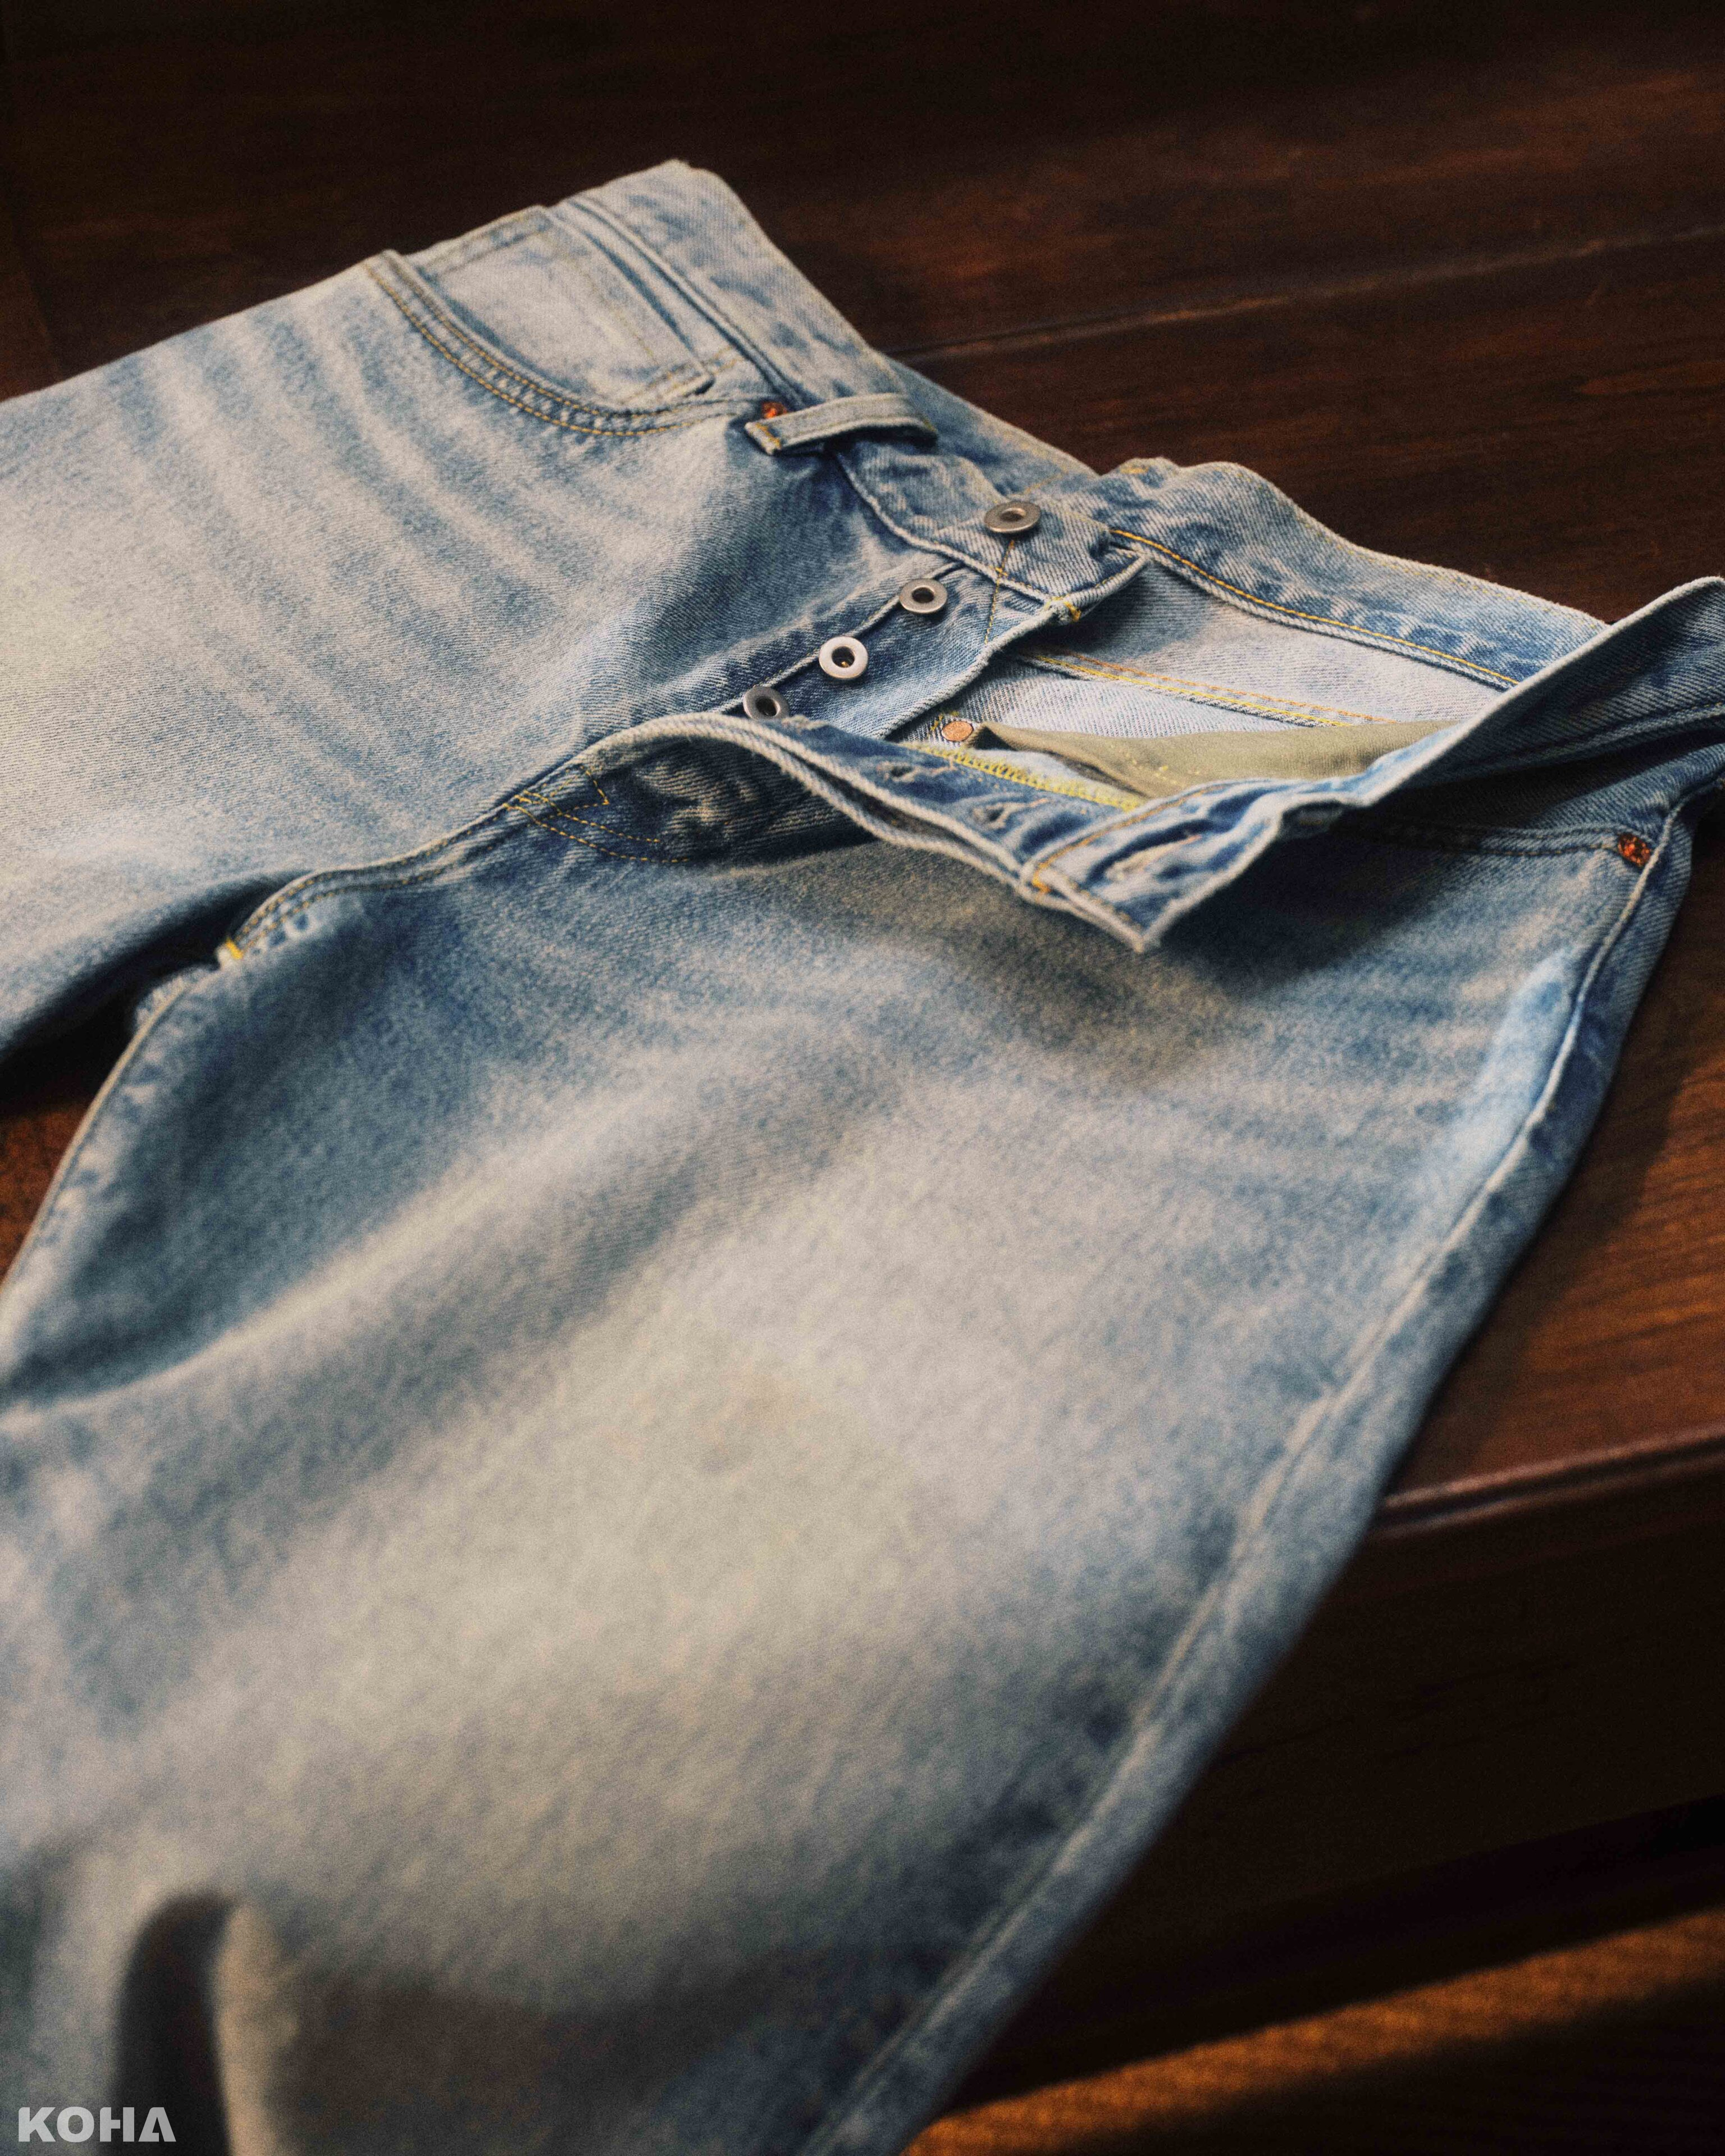 全新超 級 寬 2.0聯乘膠囊系列中，丹寧褲亦以專為BEAMS所獨家研發的橘色縫線赤耳丹寧布邊布塑造，以1944年份501®丹寧褲為設計藍本，原汁原味還原其設計精髓1 scaled